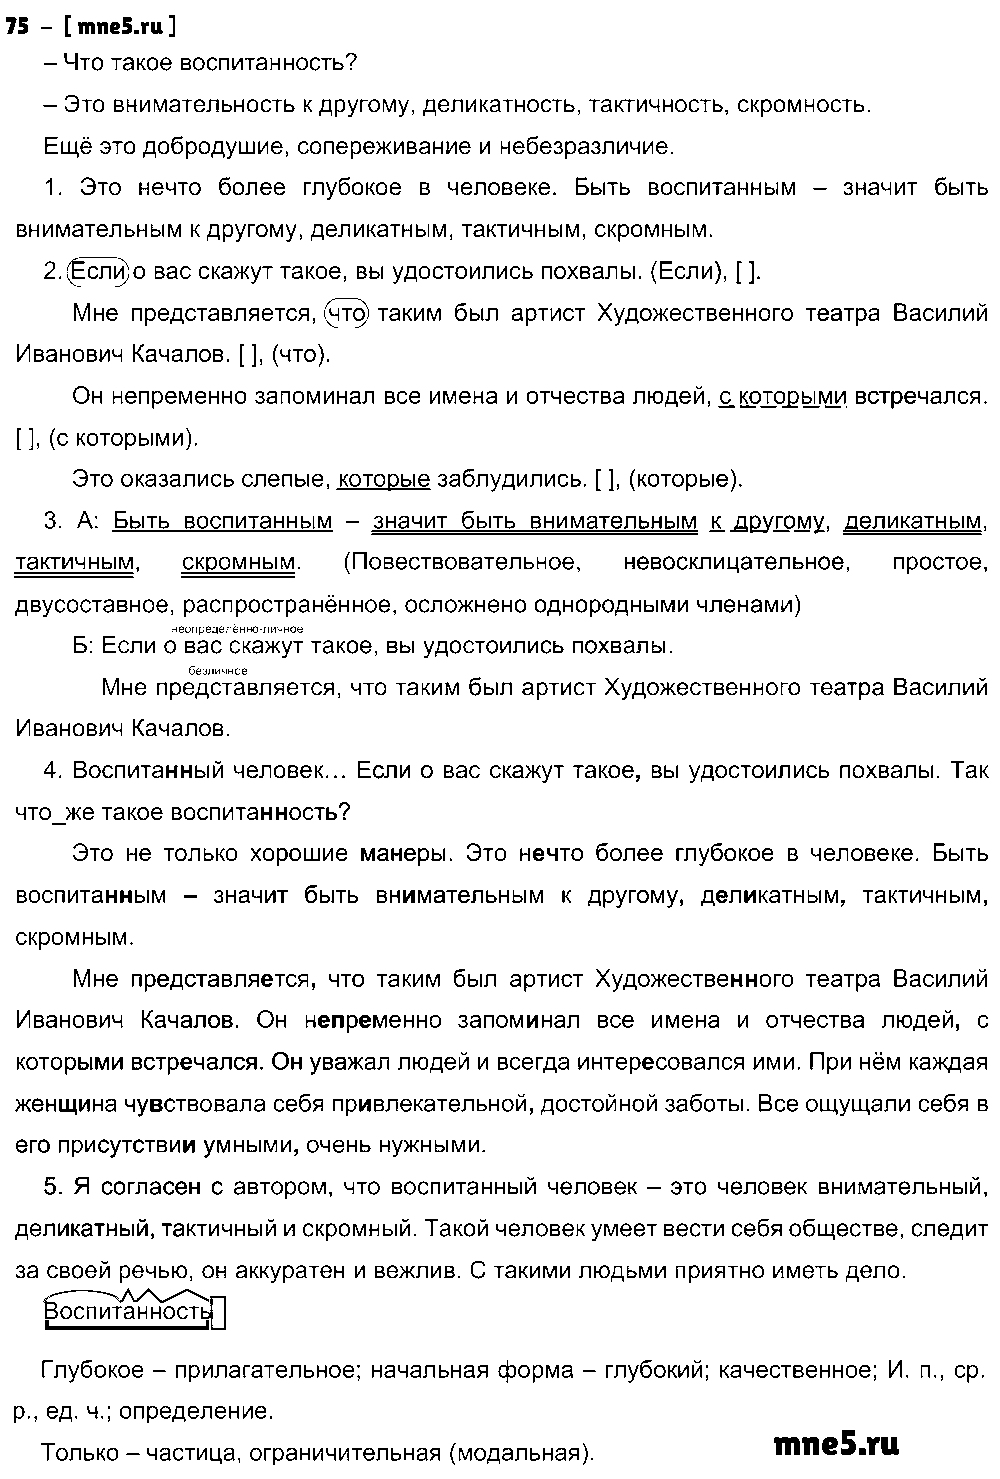 ГДЗ Русский язык 9 класс - 75